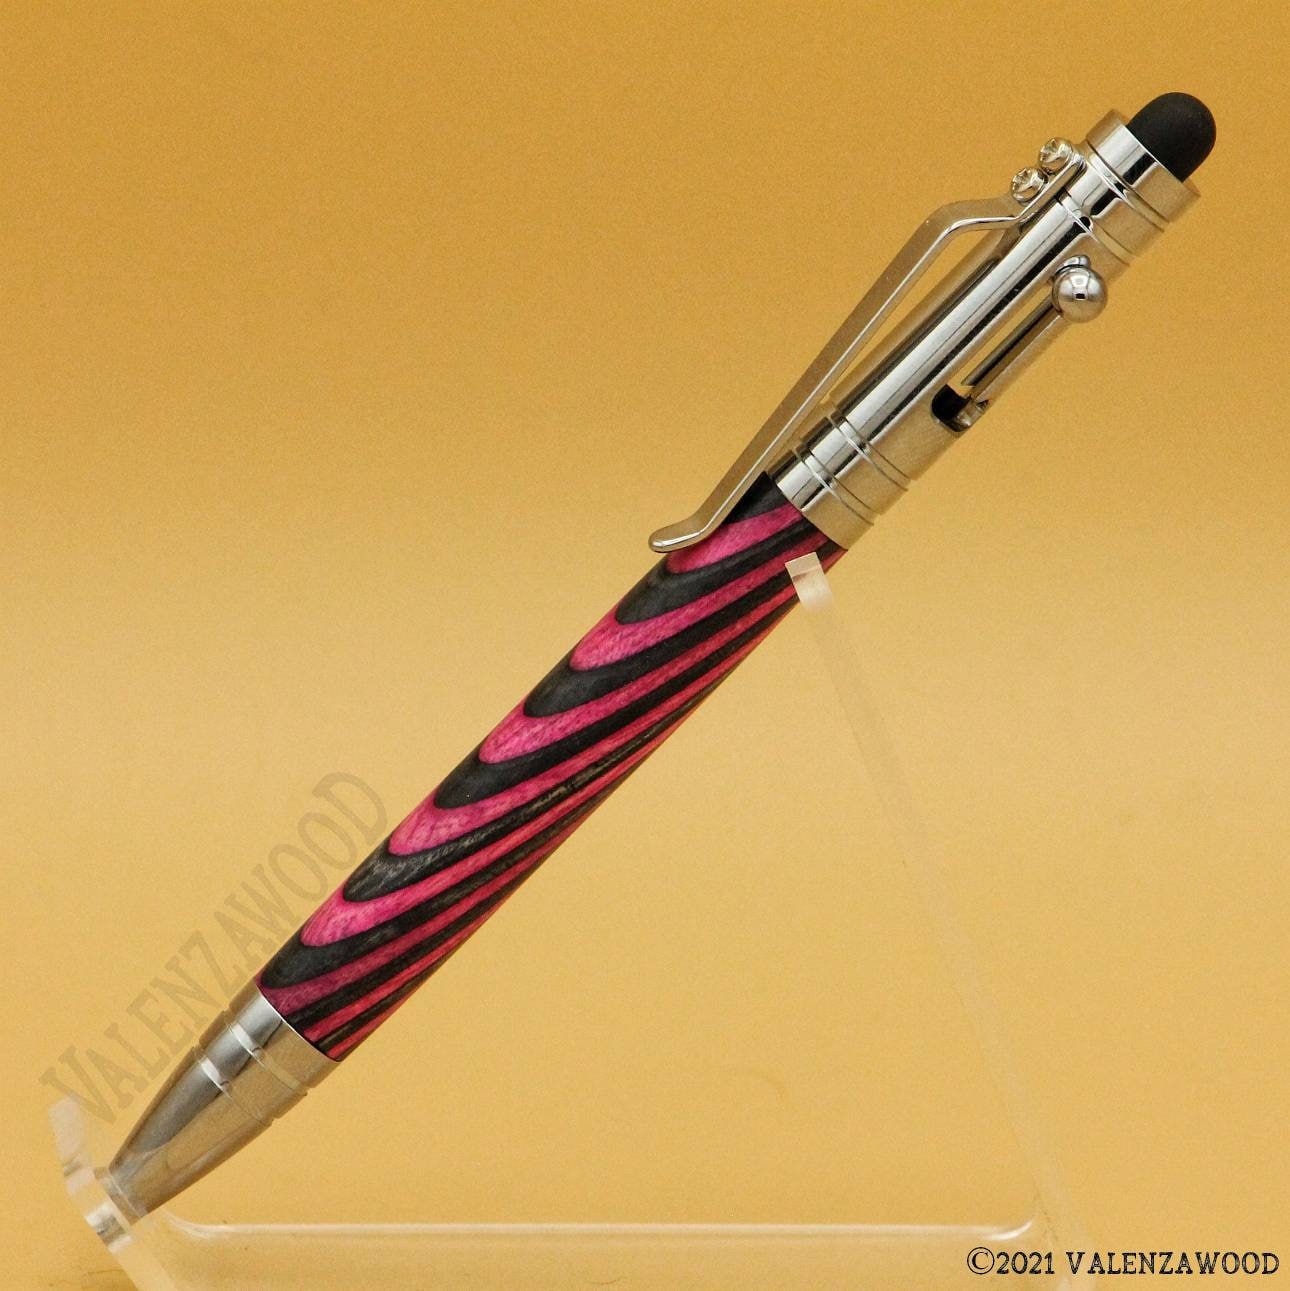 Custom Engraved Stylus Pen, Radiant Ballpoint Stylus Pen